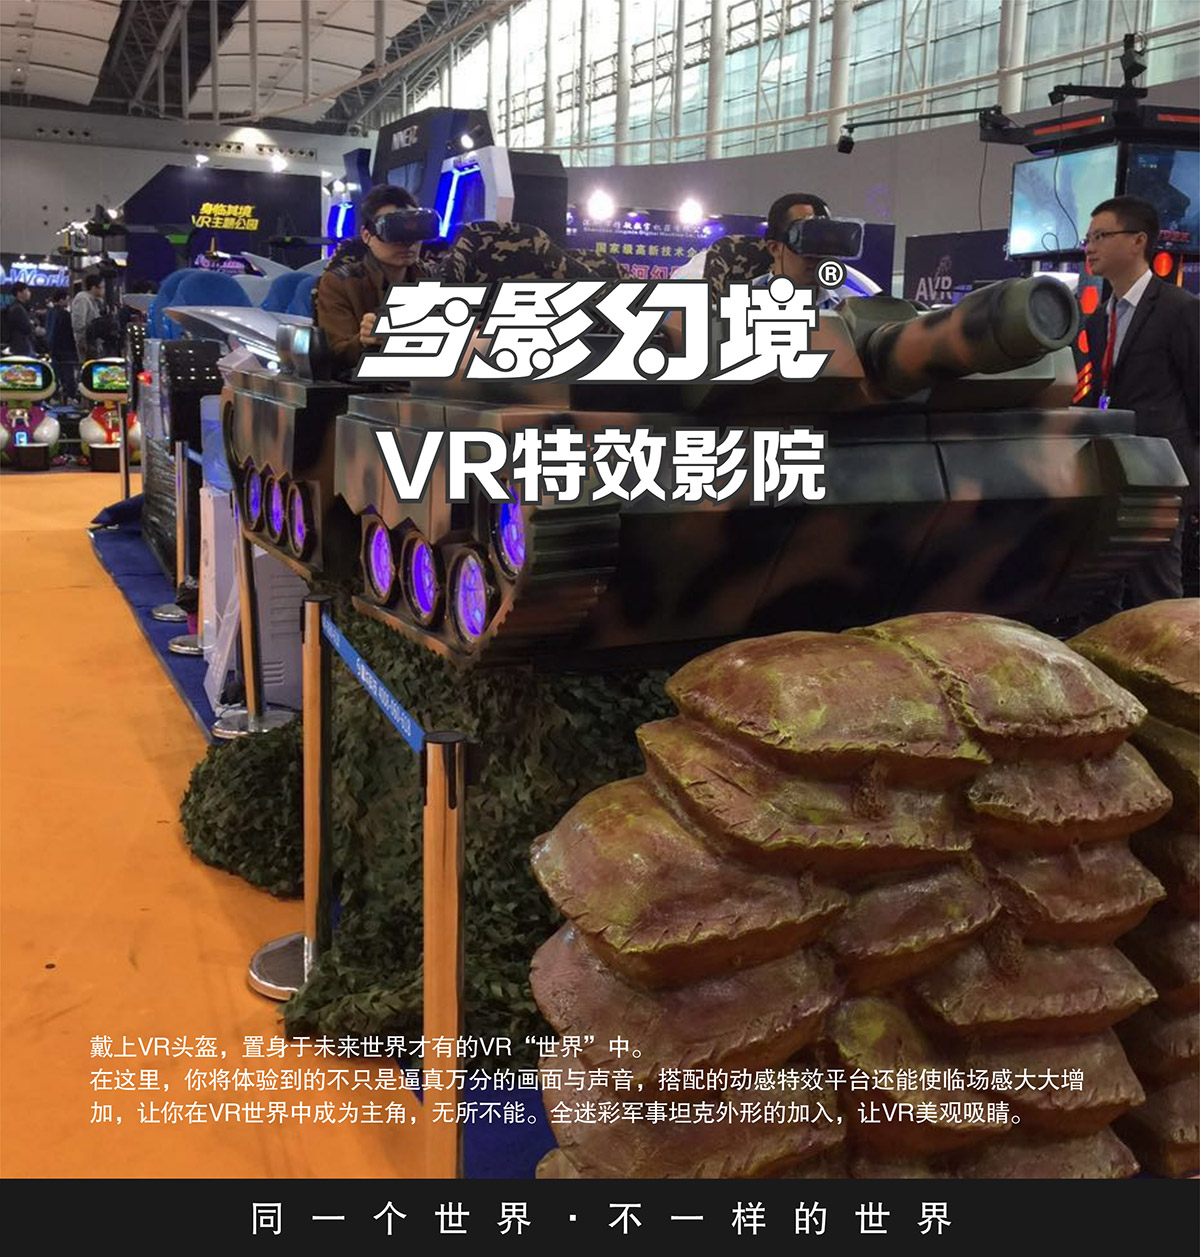 互动电影首款VR特效影院坦克对战.jpg